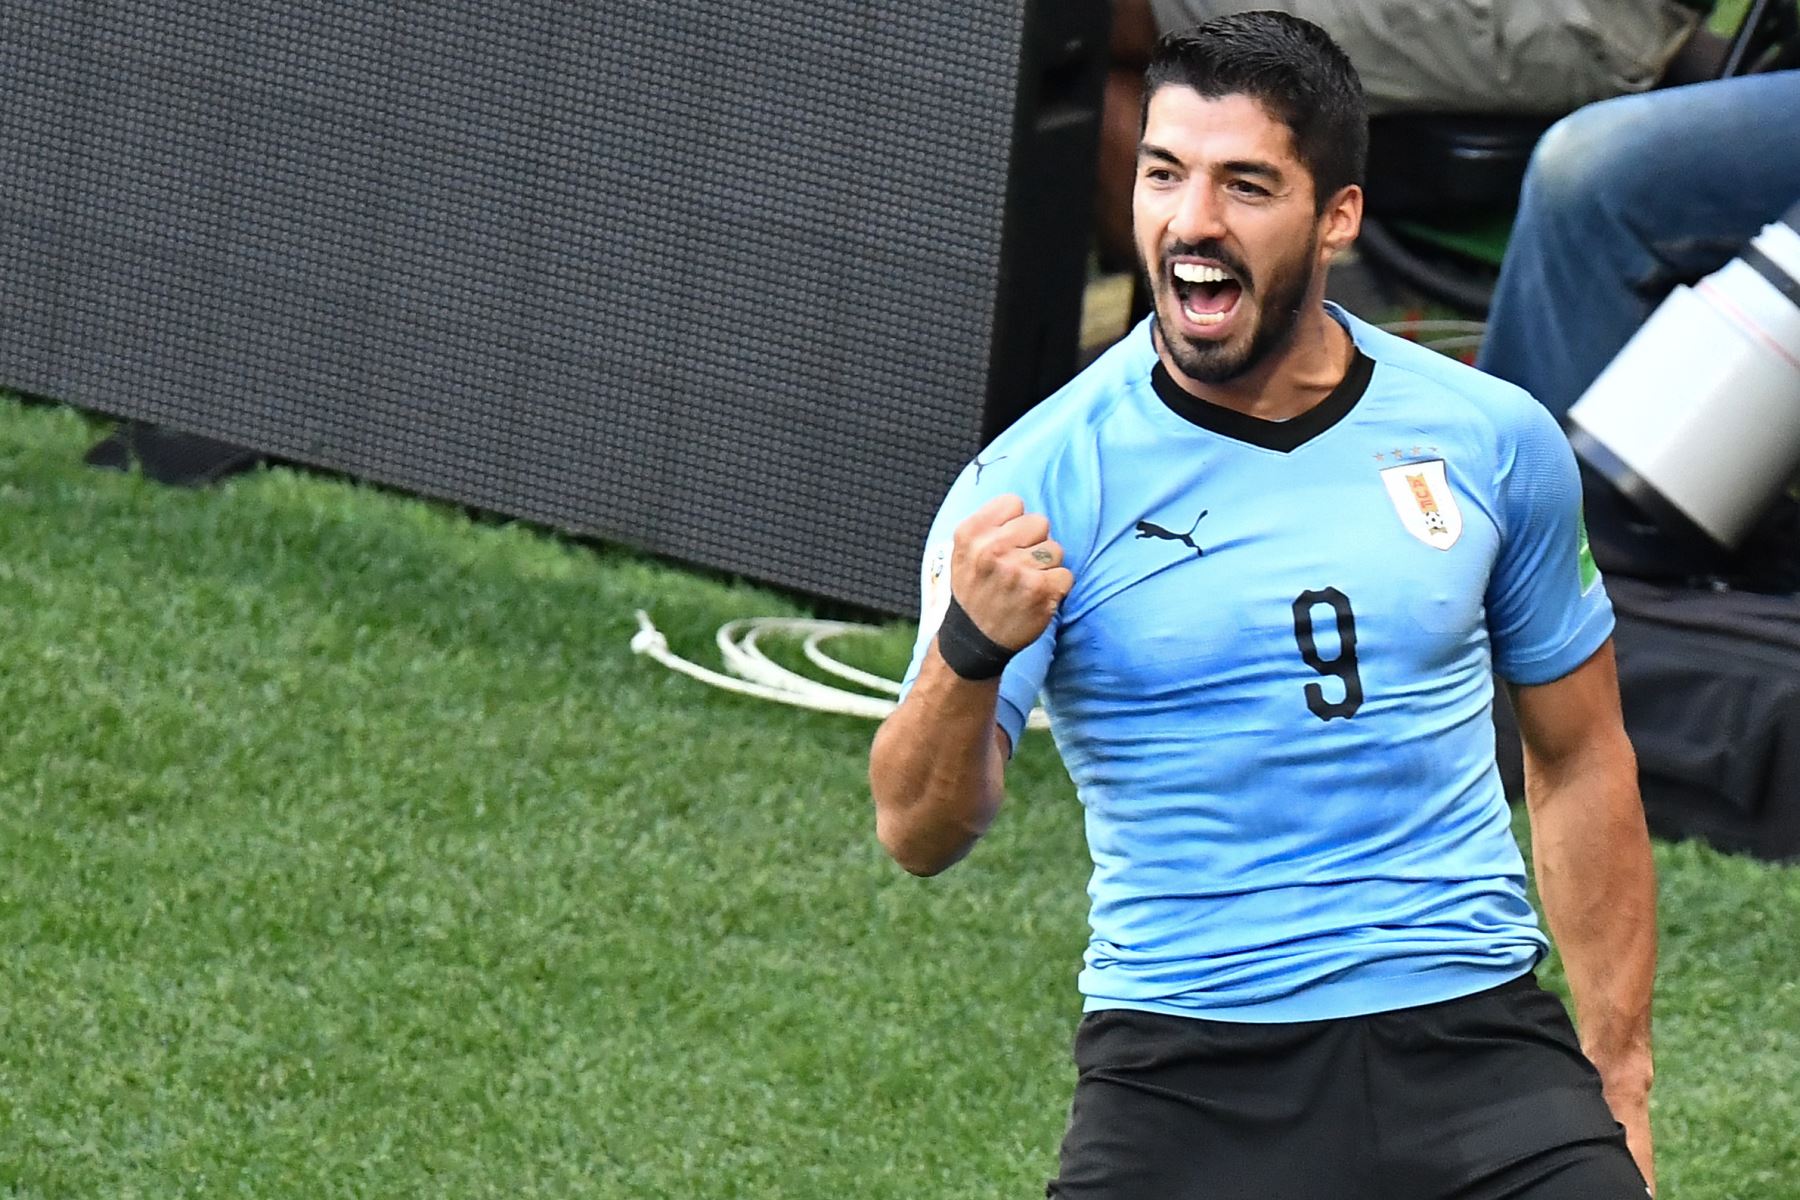 El delantero uruguayo Luis Suárez celebra después de anotar durante el partido de fútbol del Grupo A de la Copa Mundial Rusia 2018 entre Uruguay y Arabia Saudita en el Rostov Arena en Rostov-On-Don el 20 de junio de 2018. / AFP